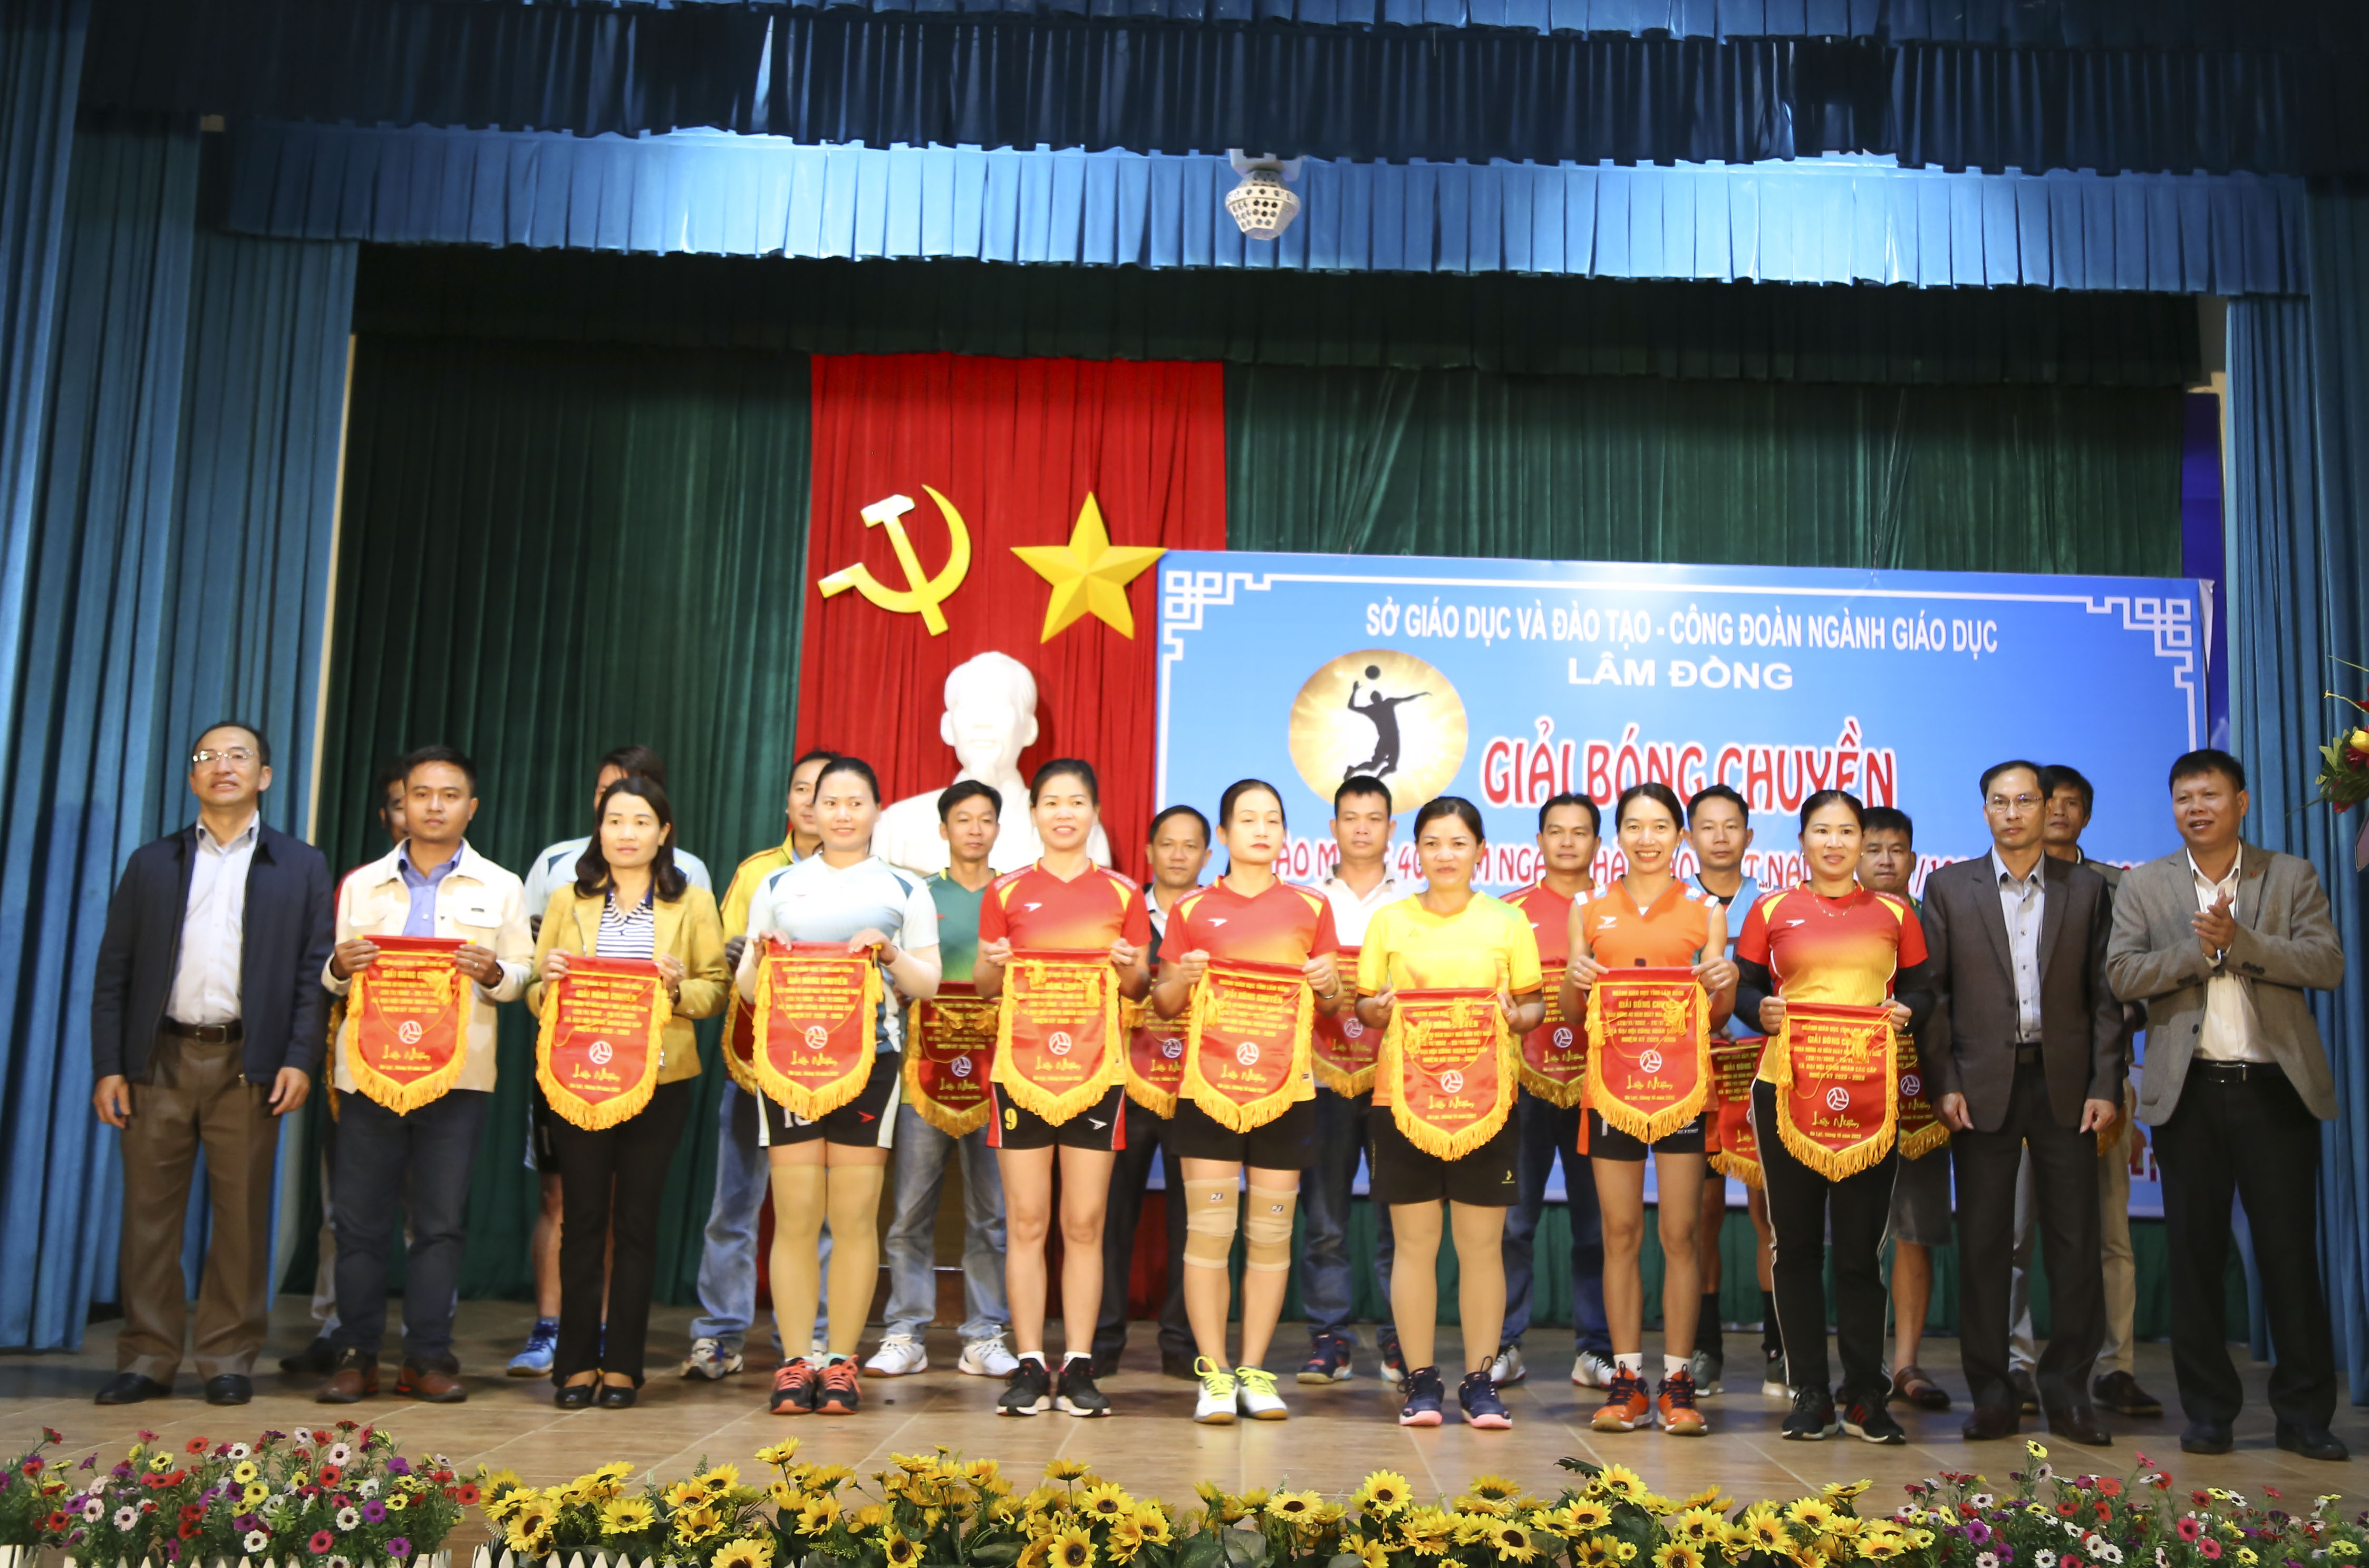 Giải Bóng chuyền ngành Giáo dục tỉnh Lâm Đồng năm 2022